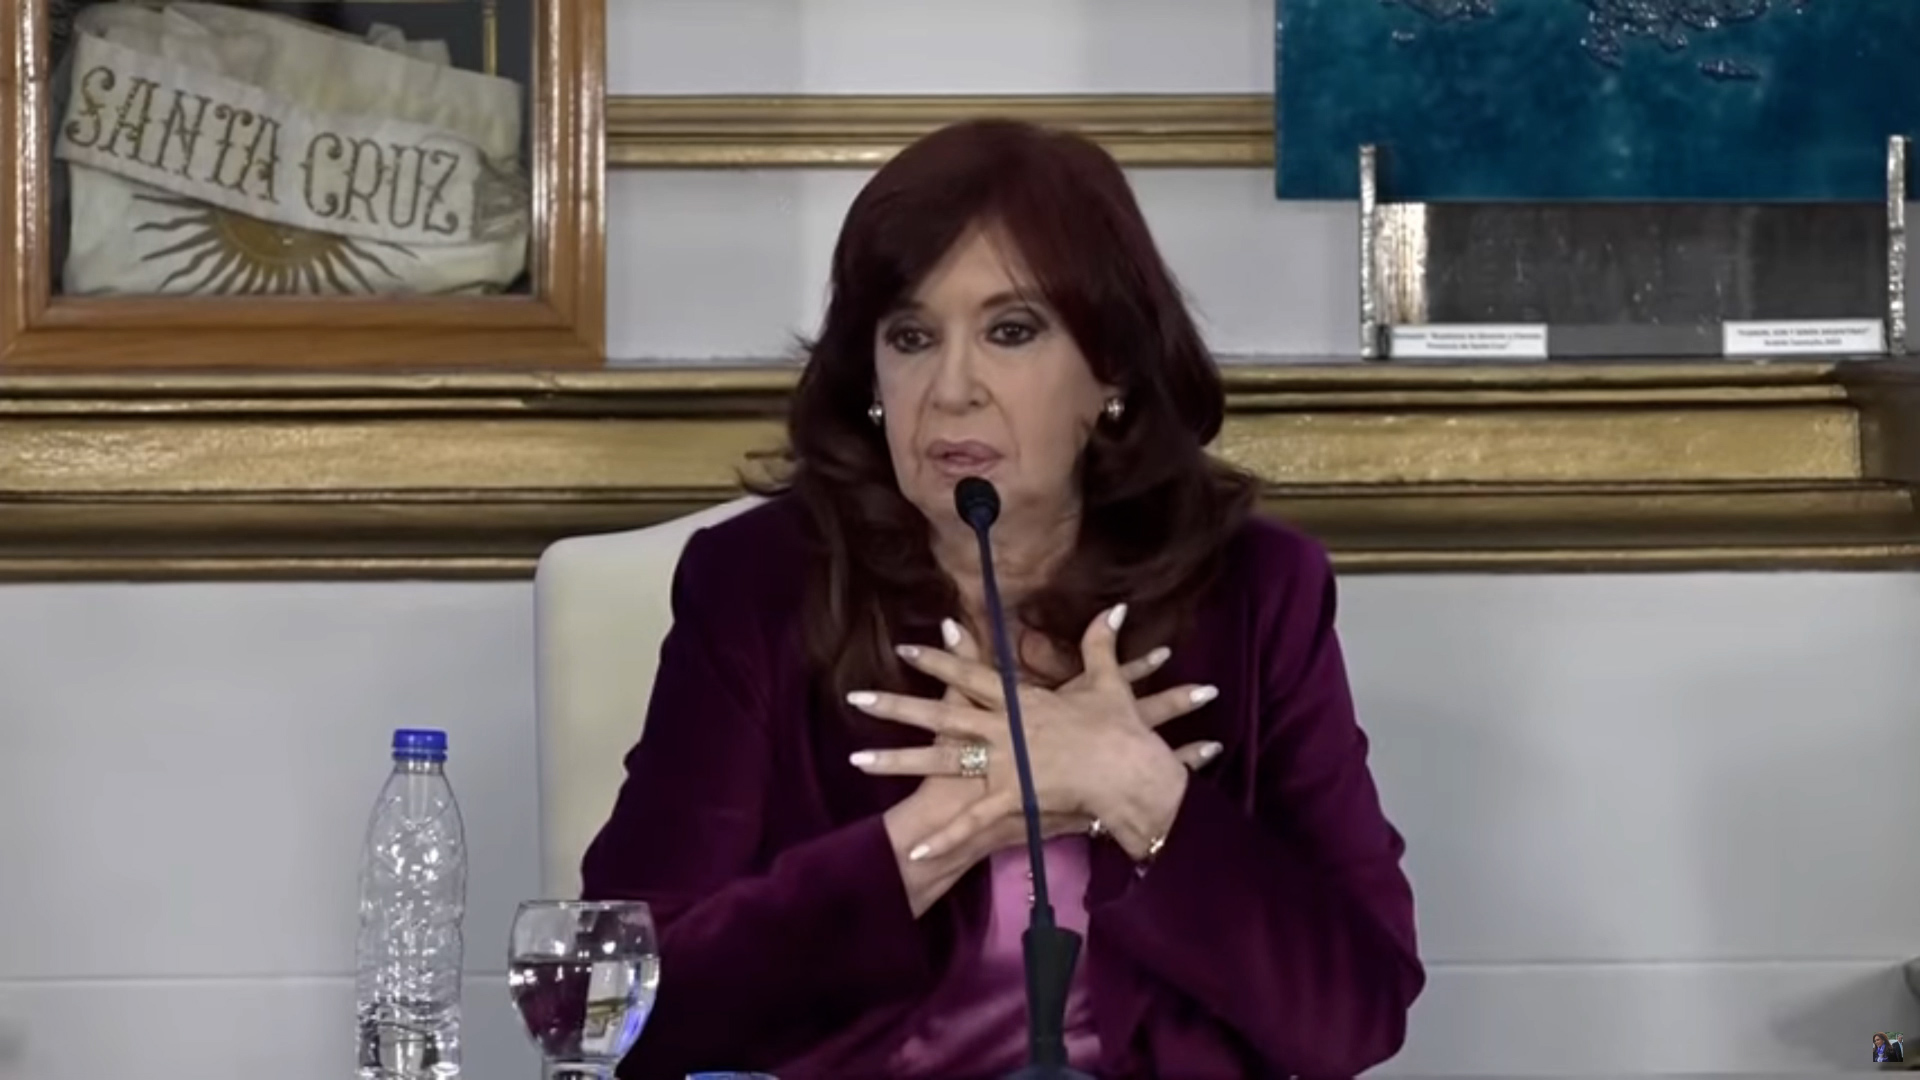 Cristina Kirchner ayer en Santa Cruz criticó a Alberto Fernández por su intención de ir a internas